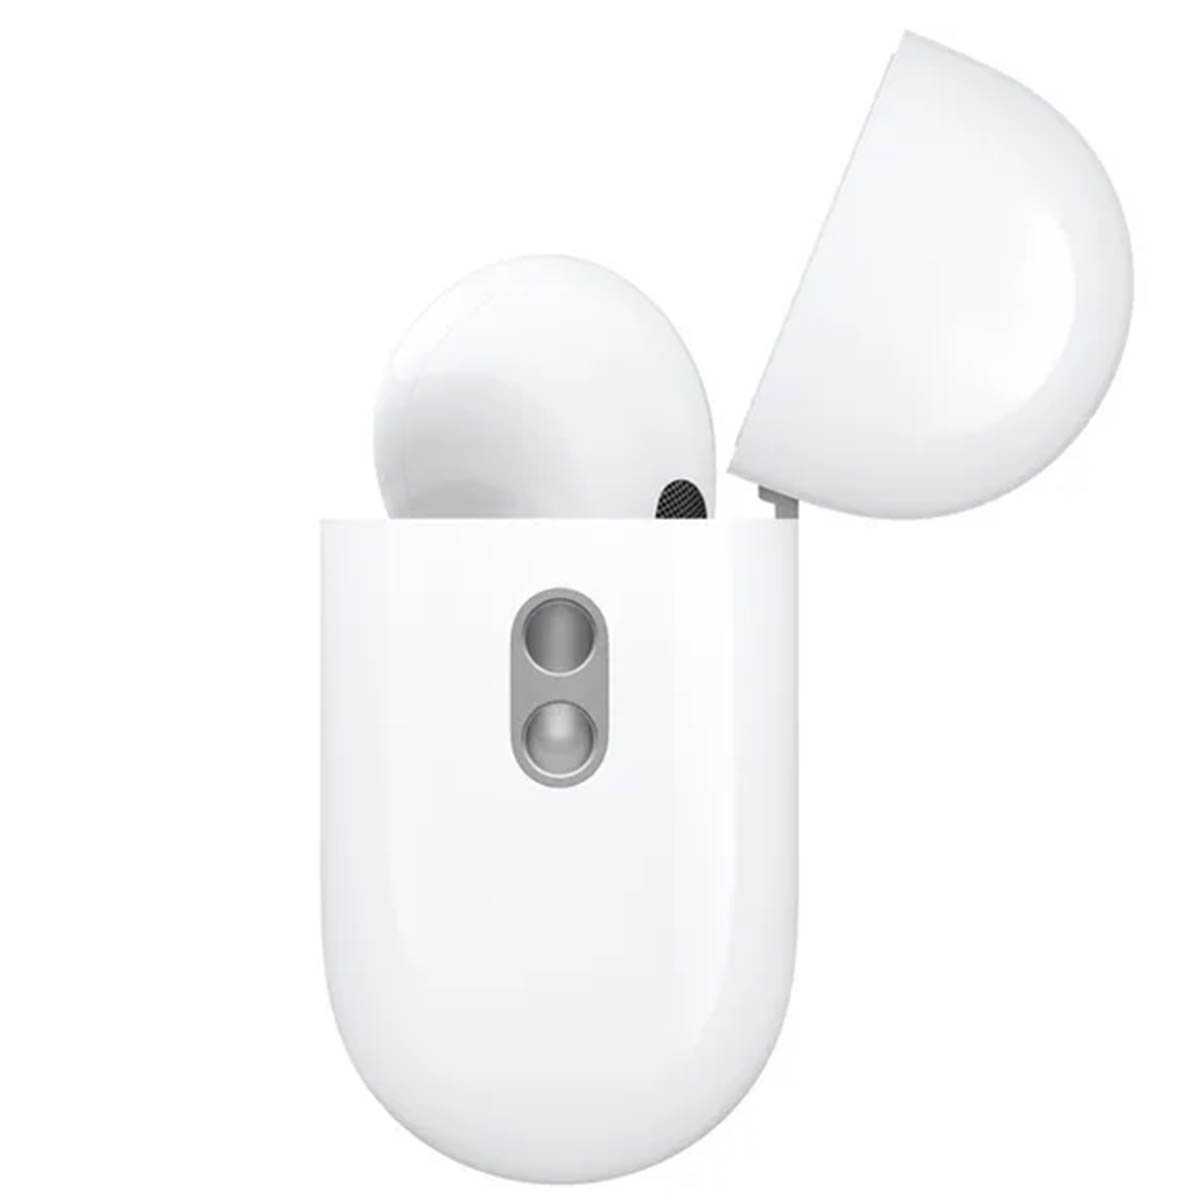 Гарнитура (наушники с микрофоном) беспроводная, AirPods Pro (2nd generation), цвет белый